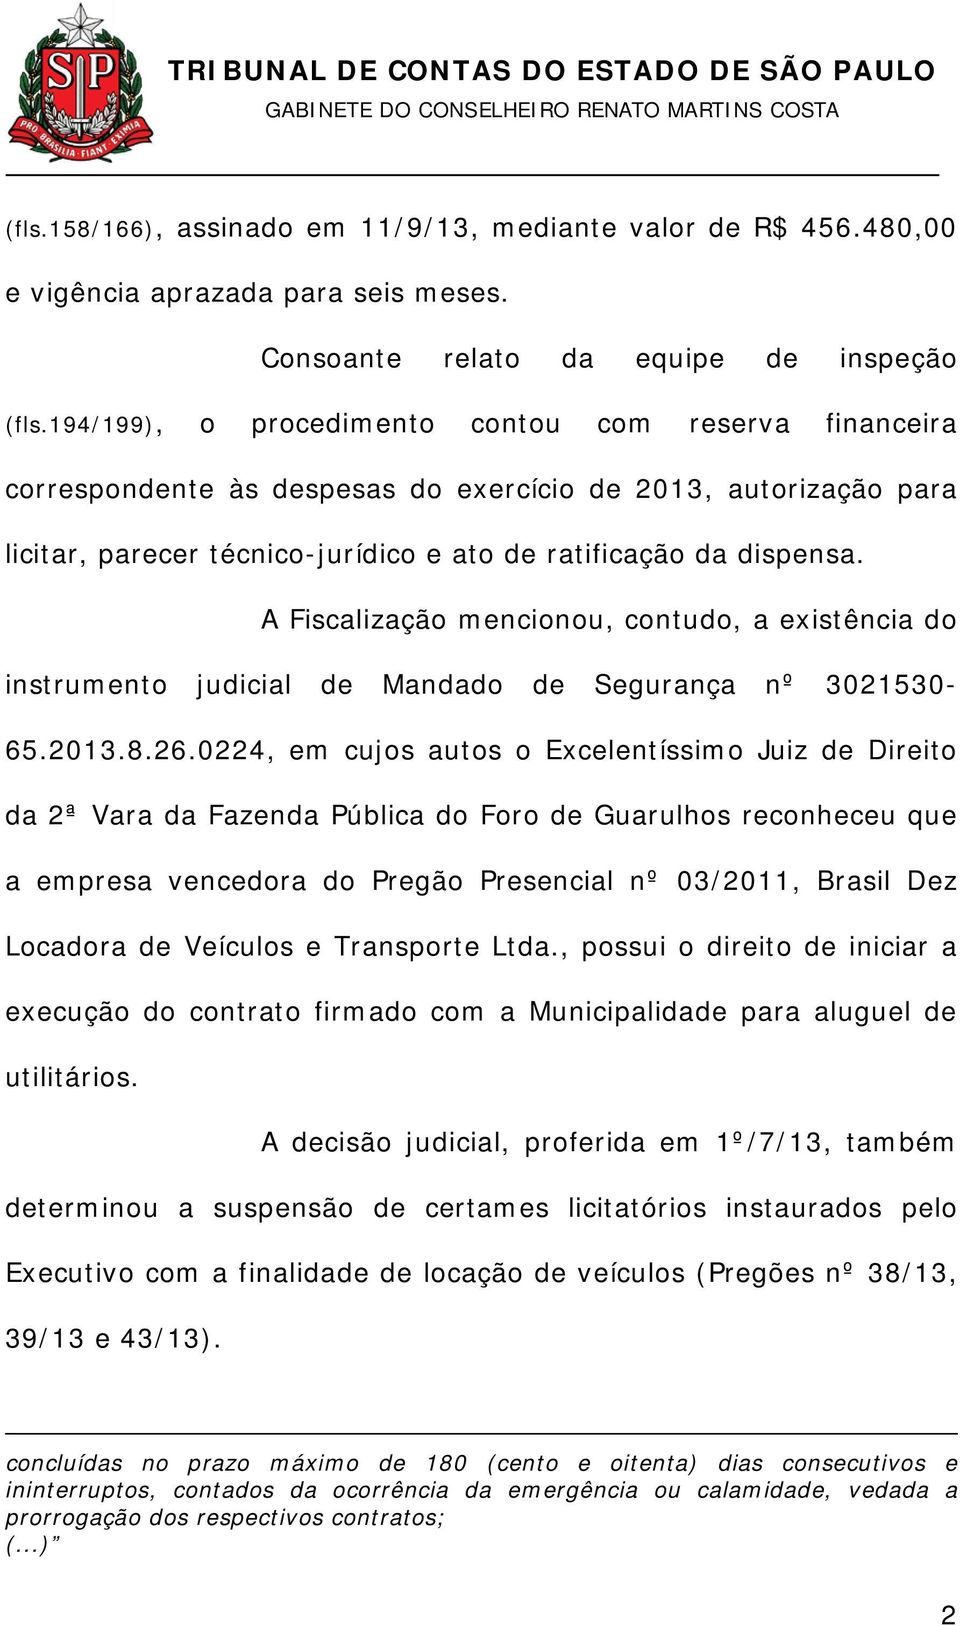 A Fiscalização mencionou, contudo, a existência do instrumento judicial de Mandado de Segurança nº 3021530-65.2013.8.26.